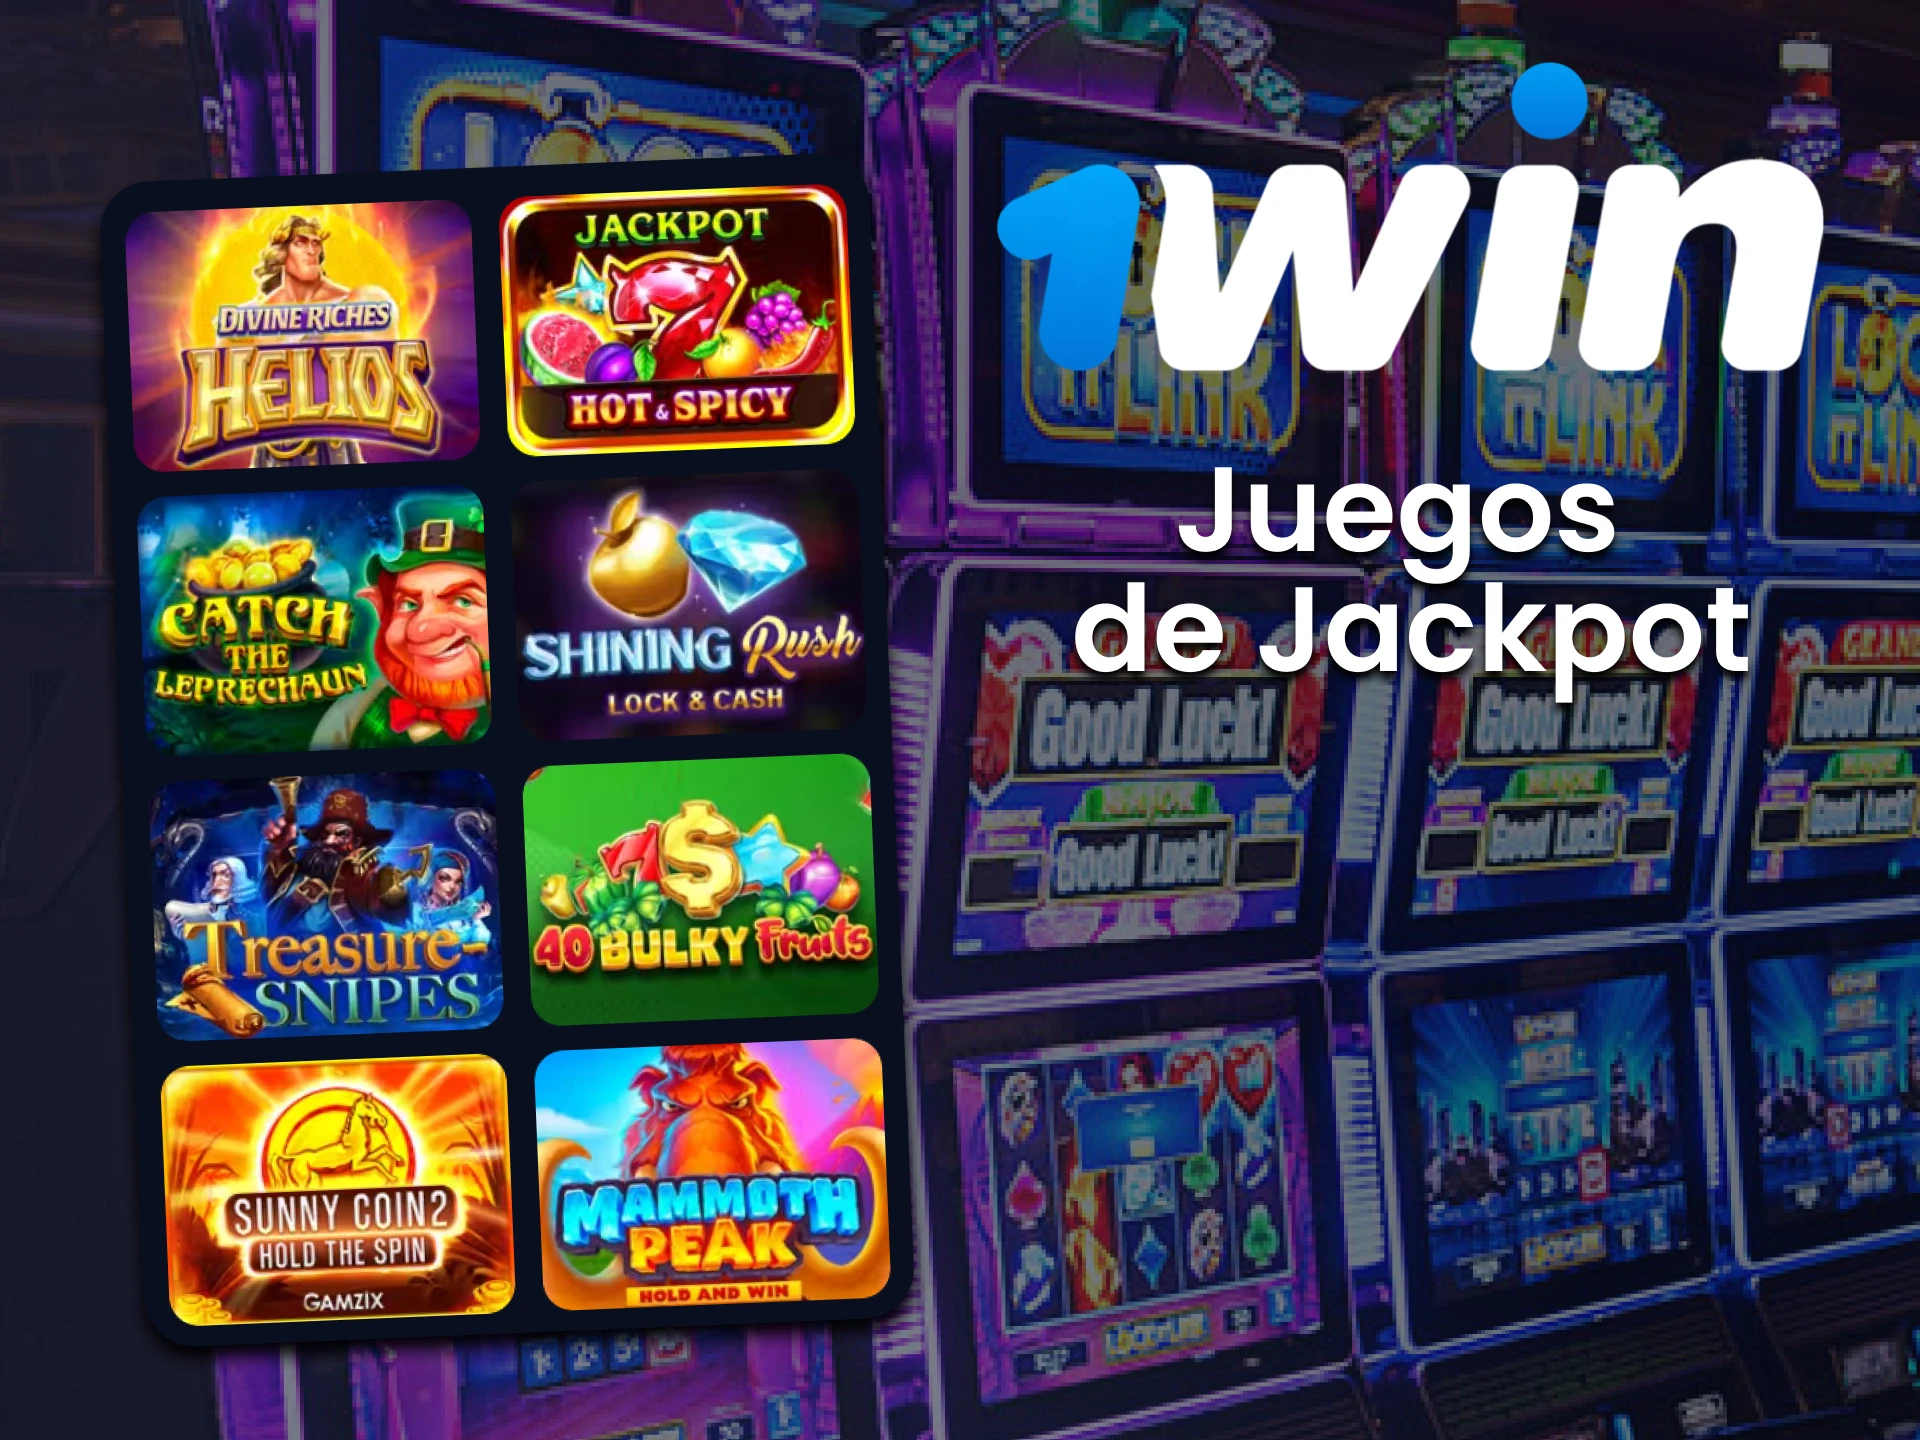 Para juegos de casino, elija jackpot de 1win.